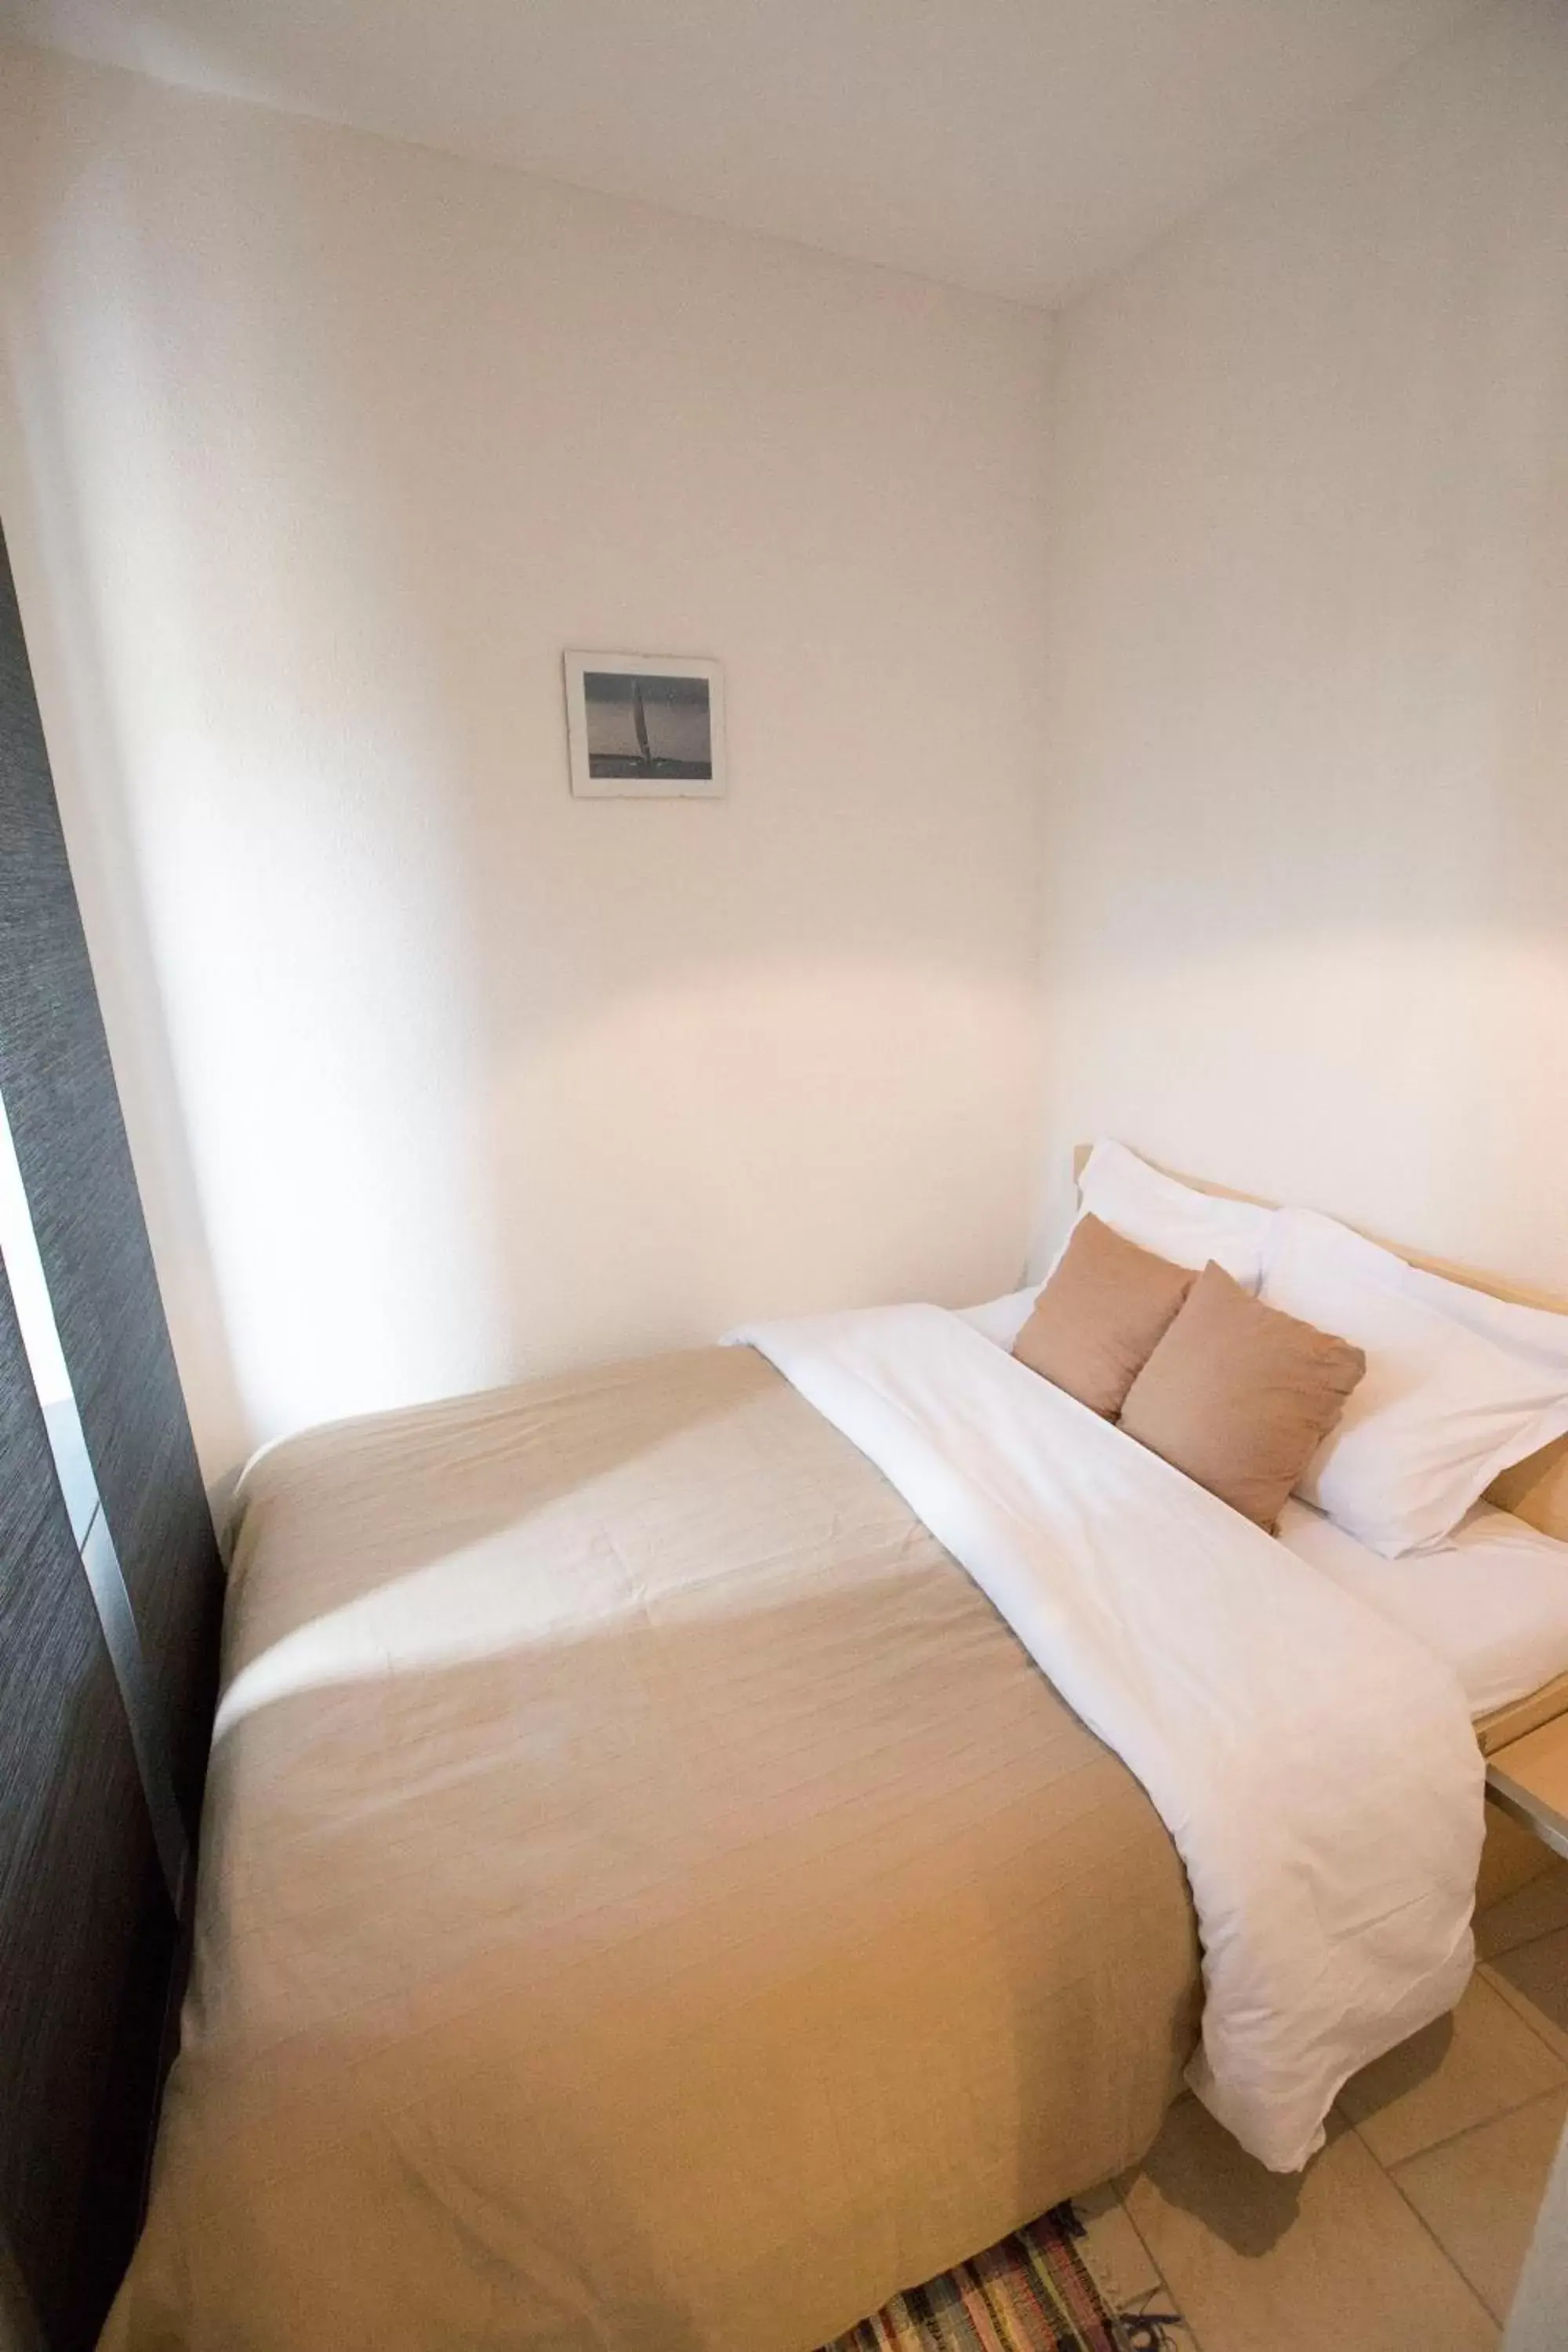 Bedroom, Room Photo in Hostellerie de L'Hôtel de Ville